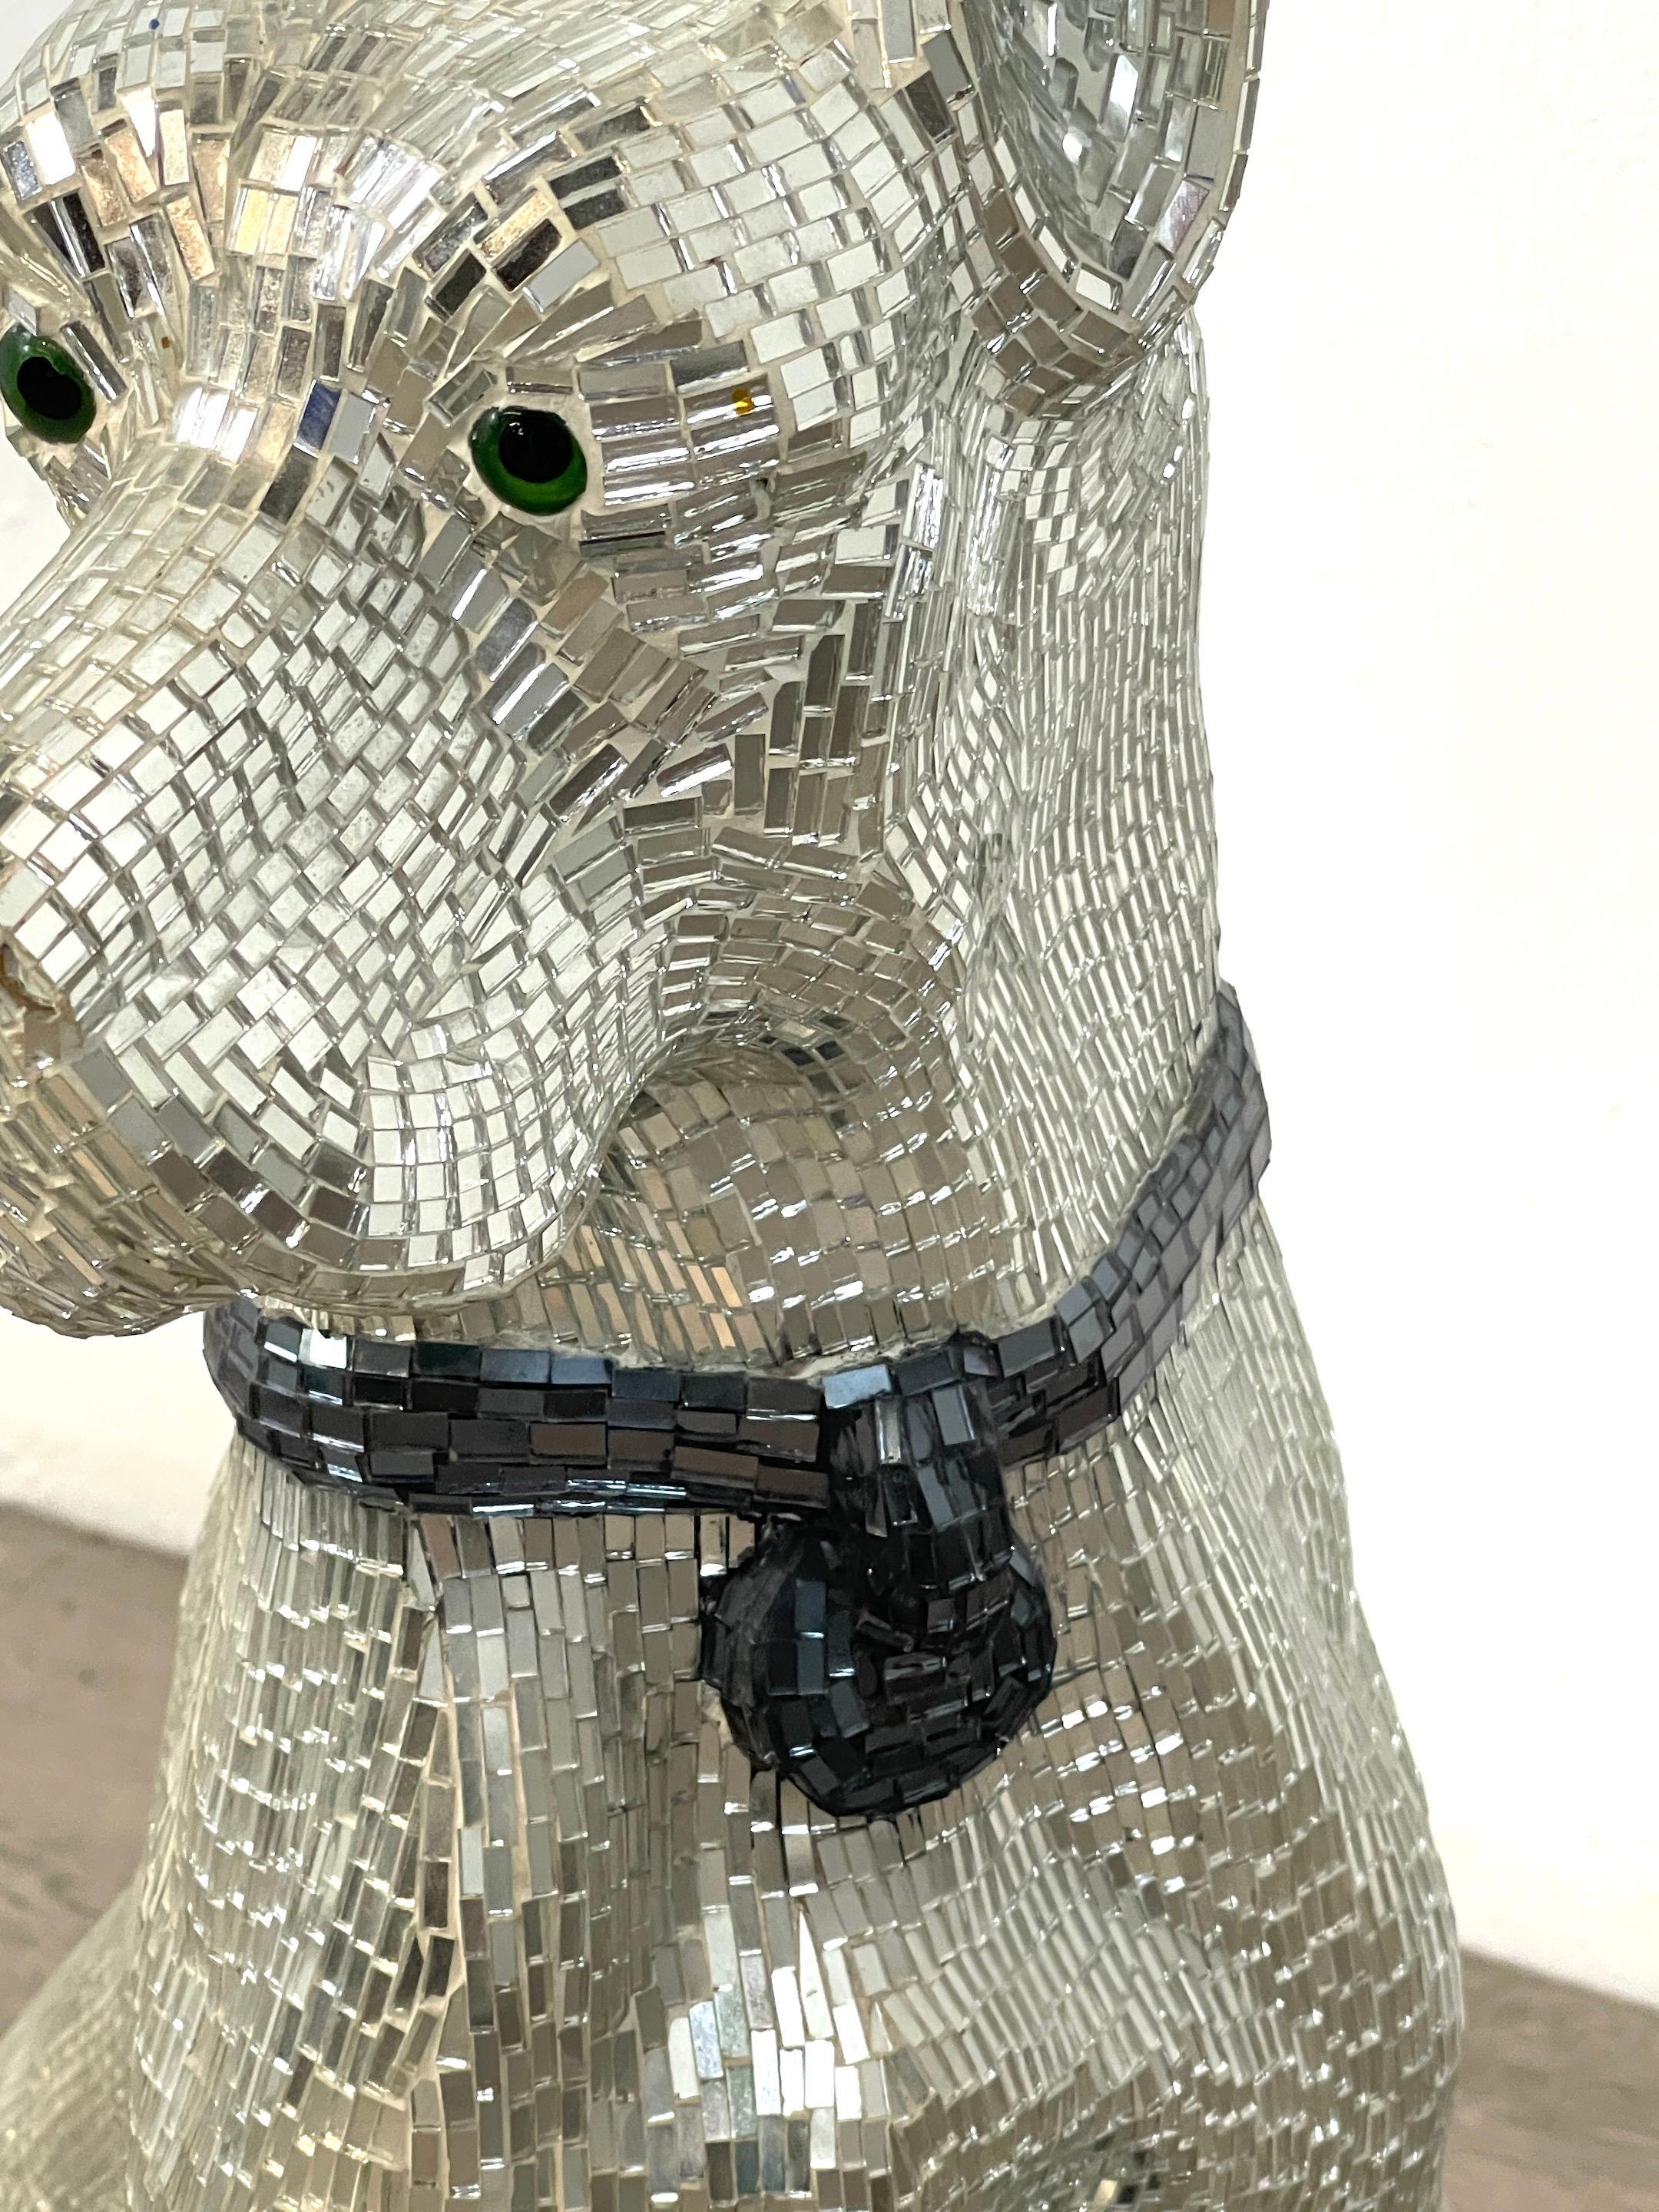 mirror dog statue